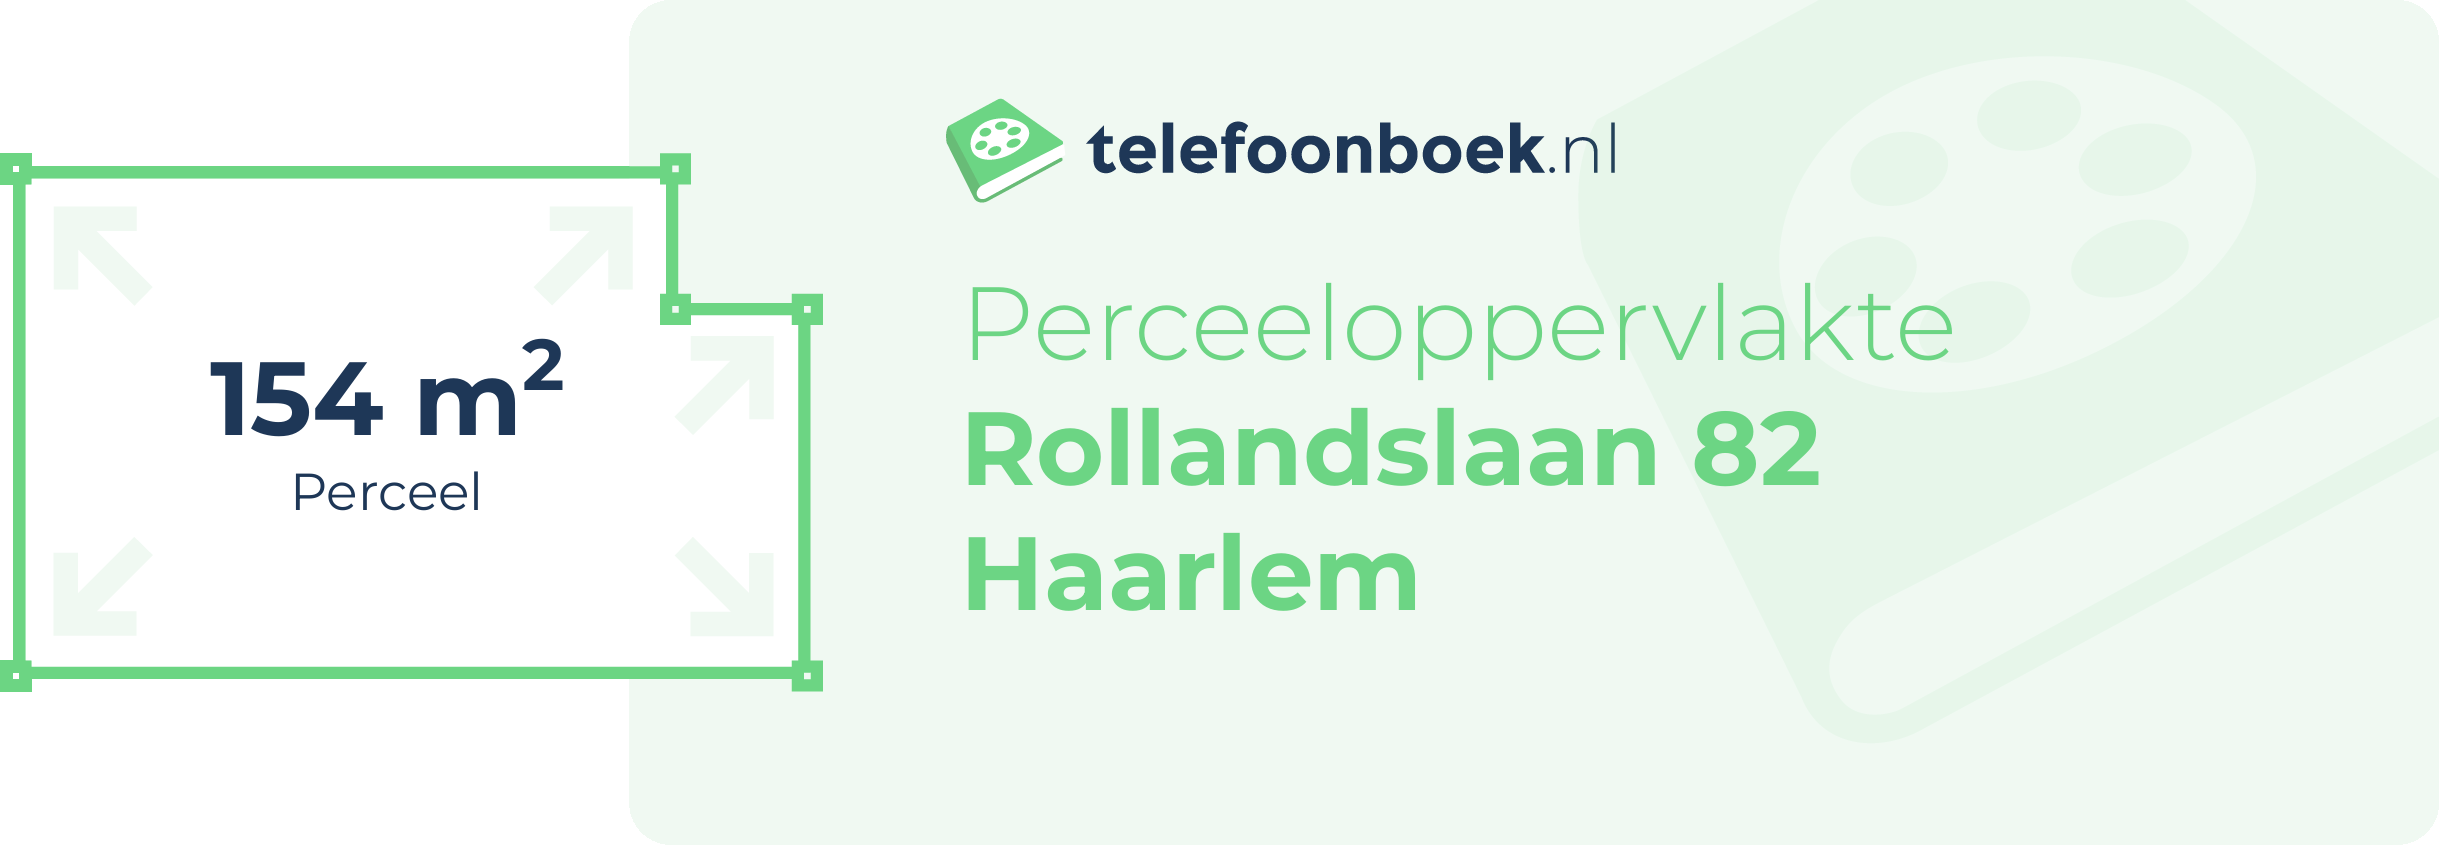 Perceeloppervlakte Rollandslaan 82 Haarlem